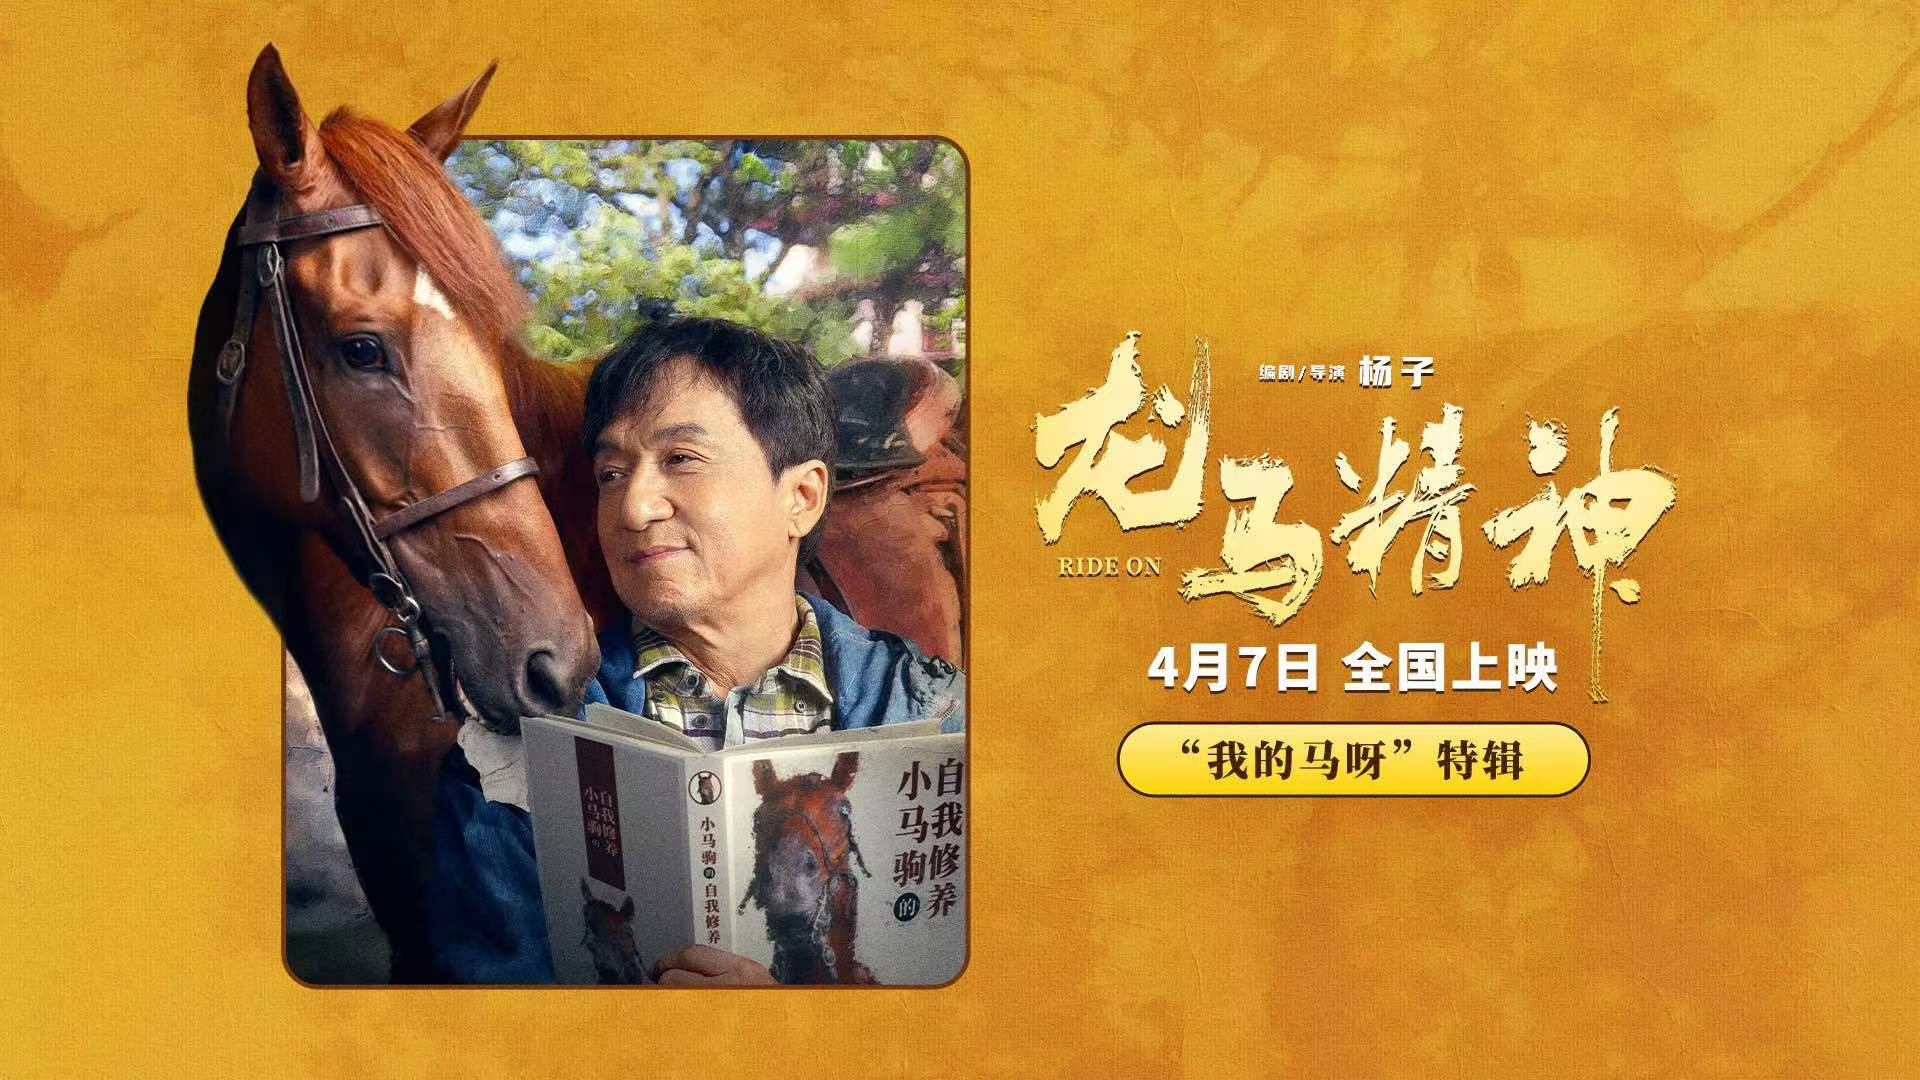 动作喜剧电影《龙马精神》发布“我的马呀”幕后特辑